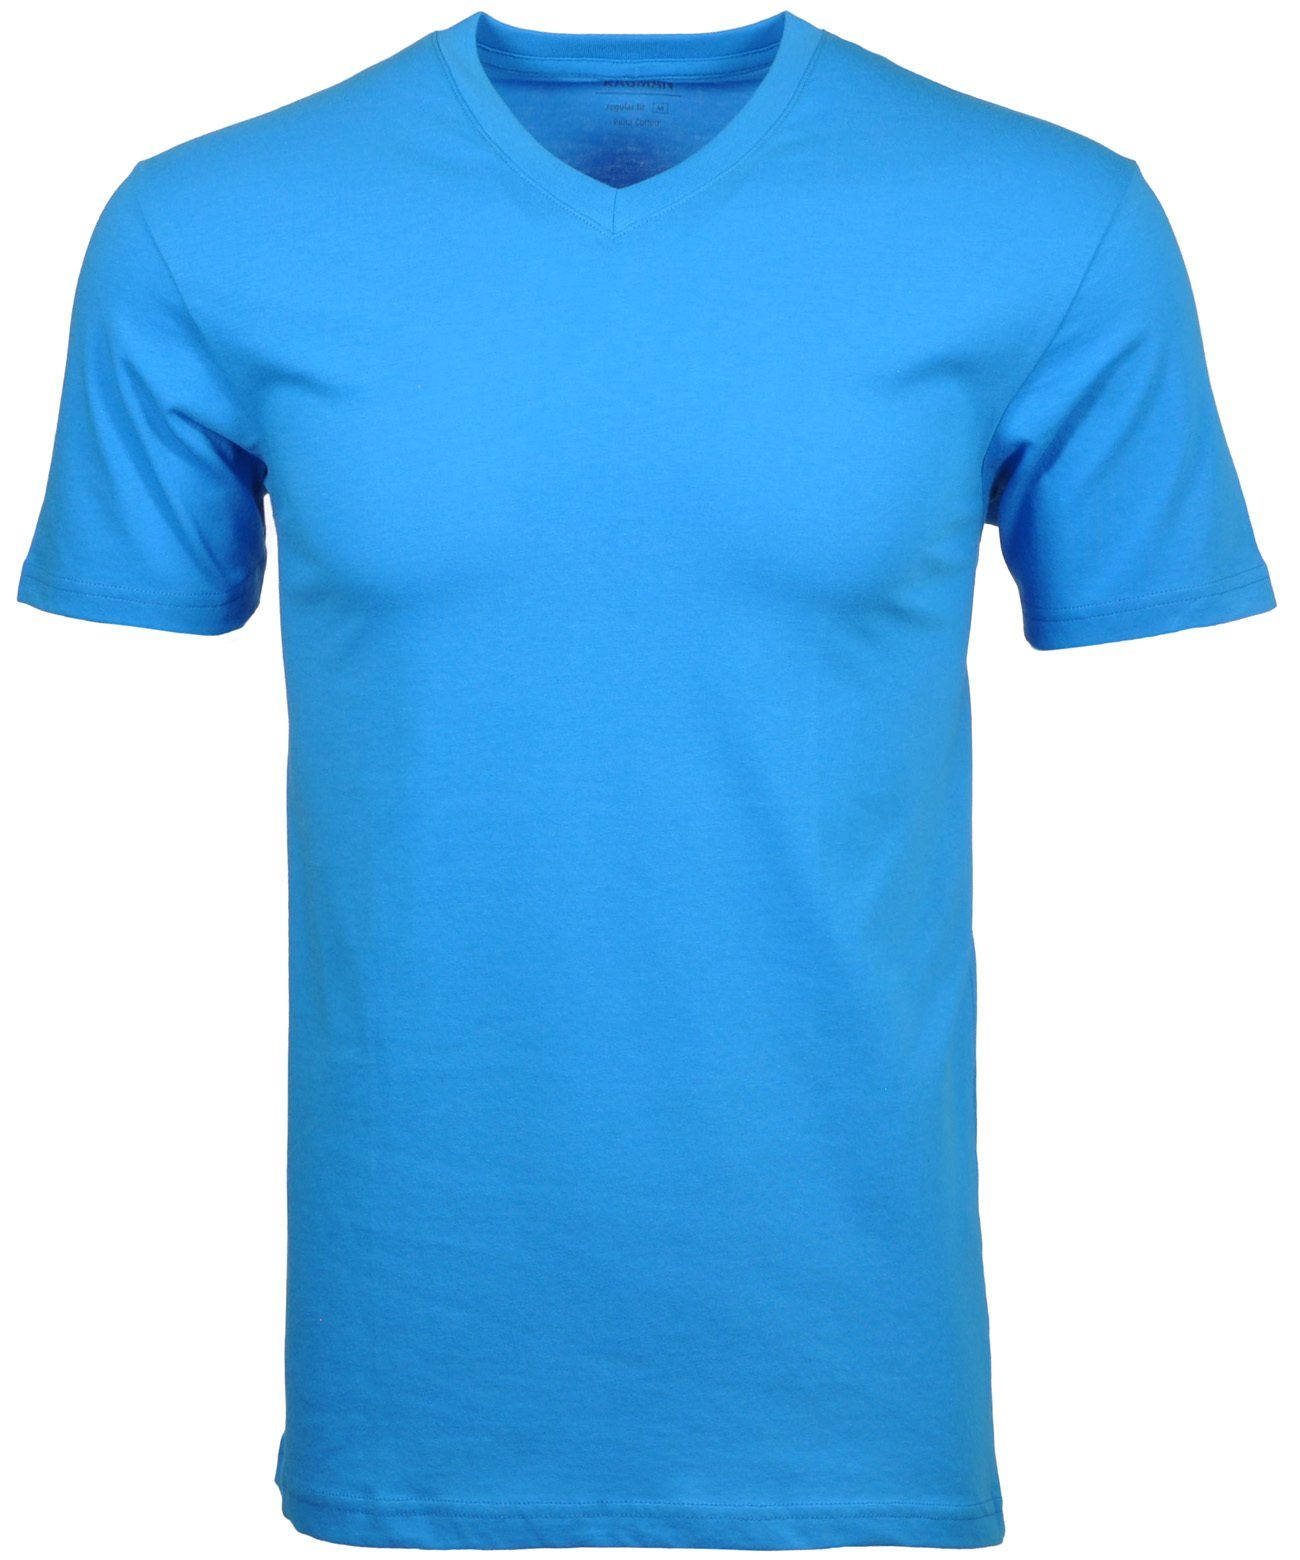 RAGMAN T-Shirt Blaugrau